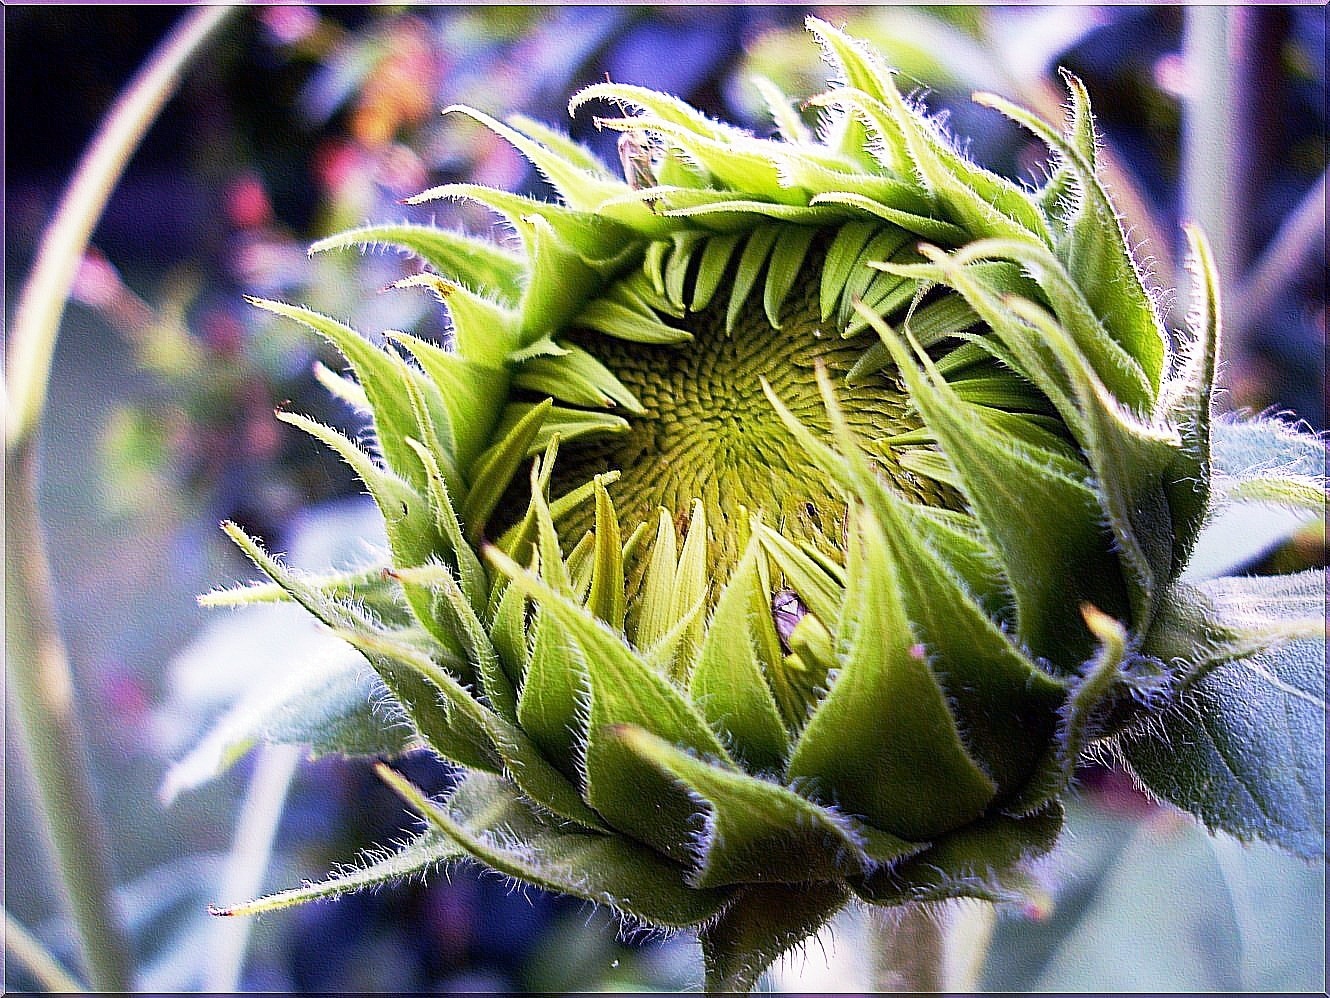 green sunflower